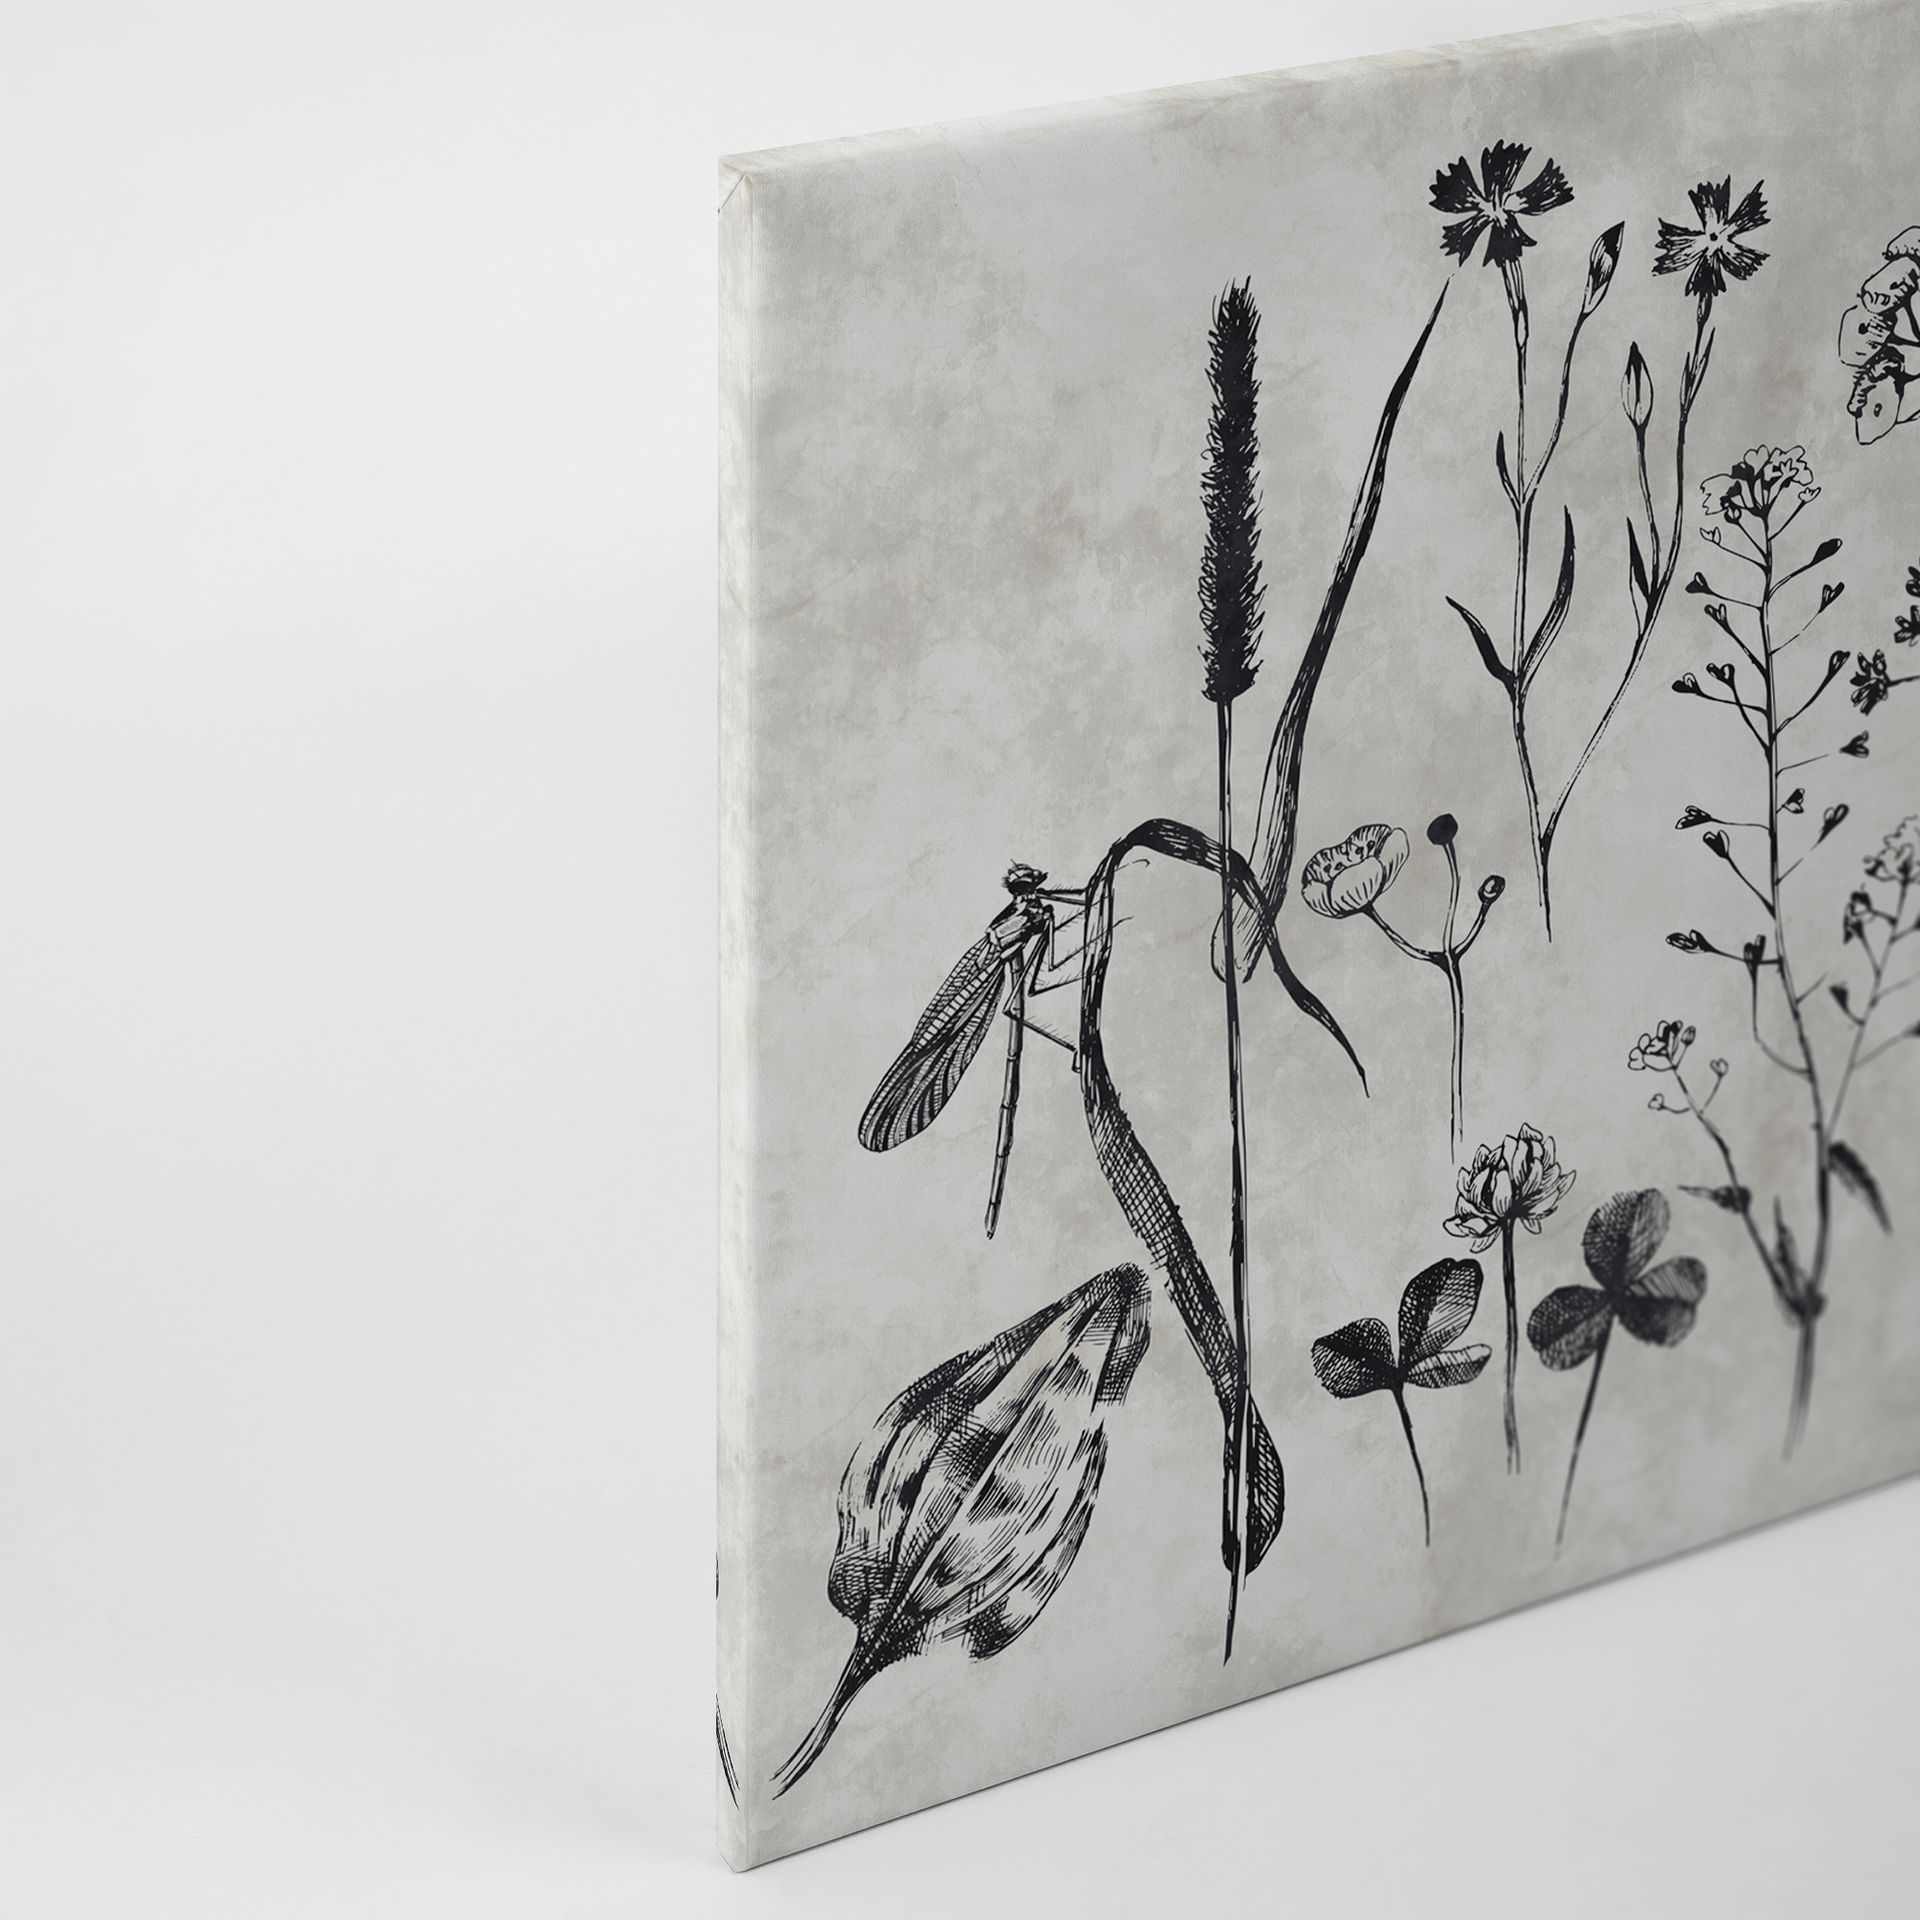 Leinwandbild Floralillustrationen, grau, 90x60 cm DD120363